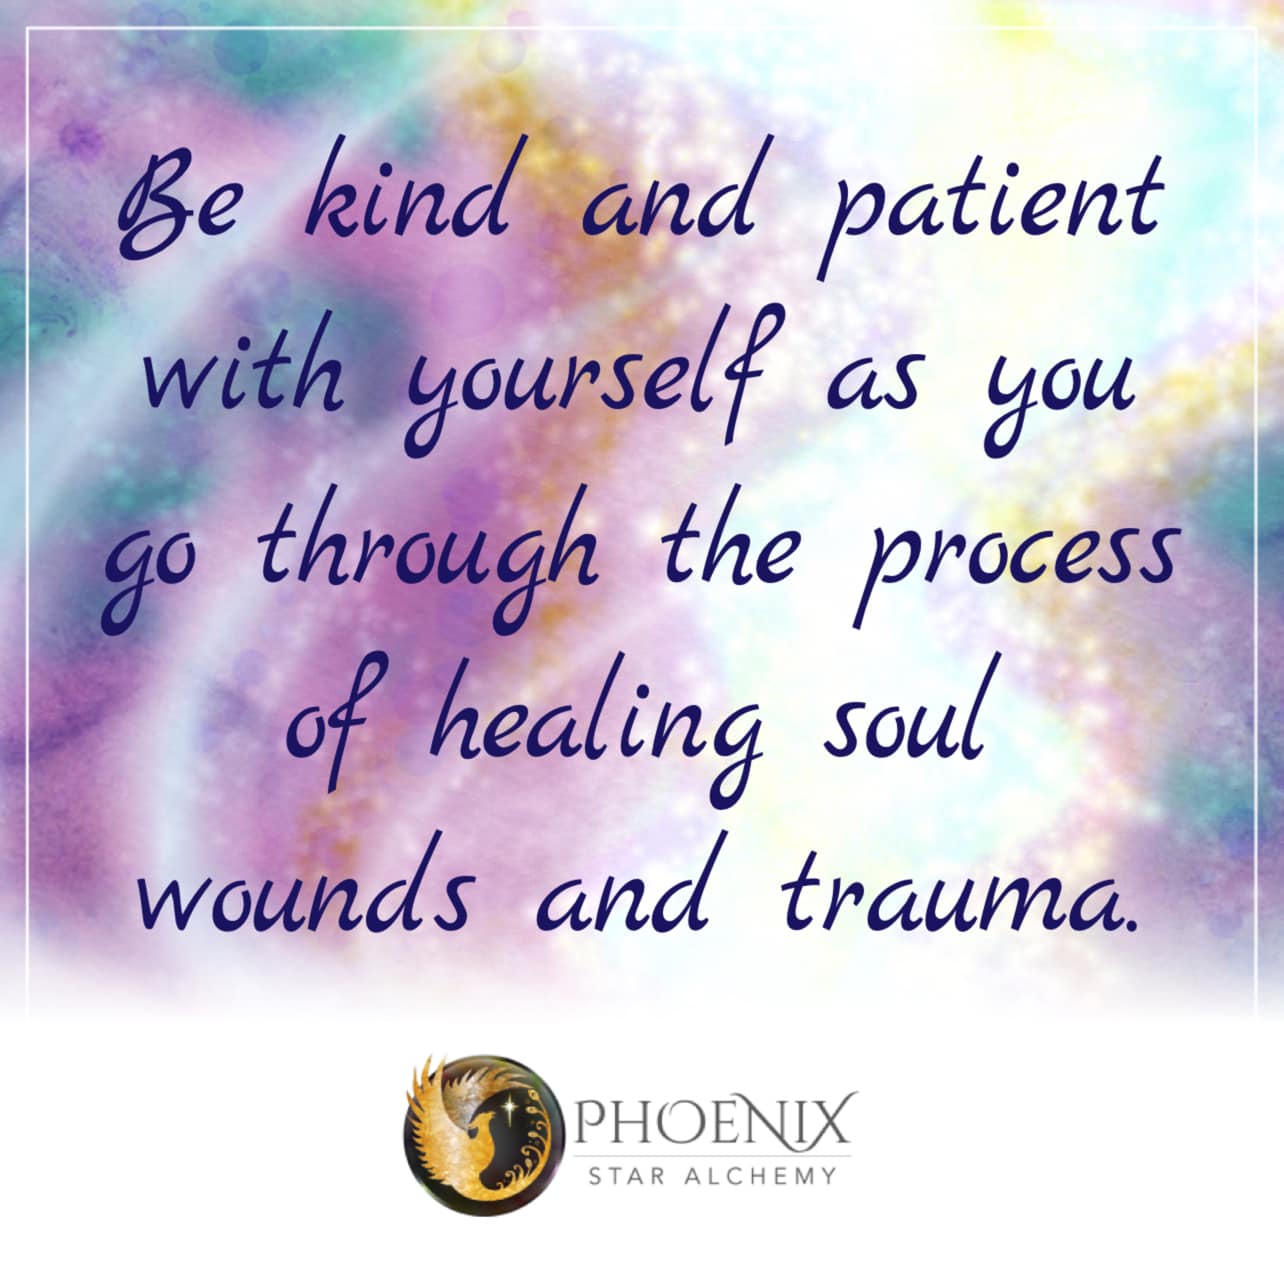 Healing Trauma with Self Love & Patience